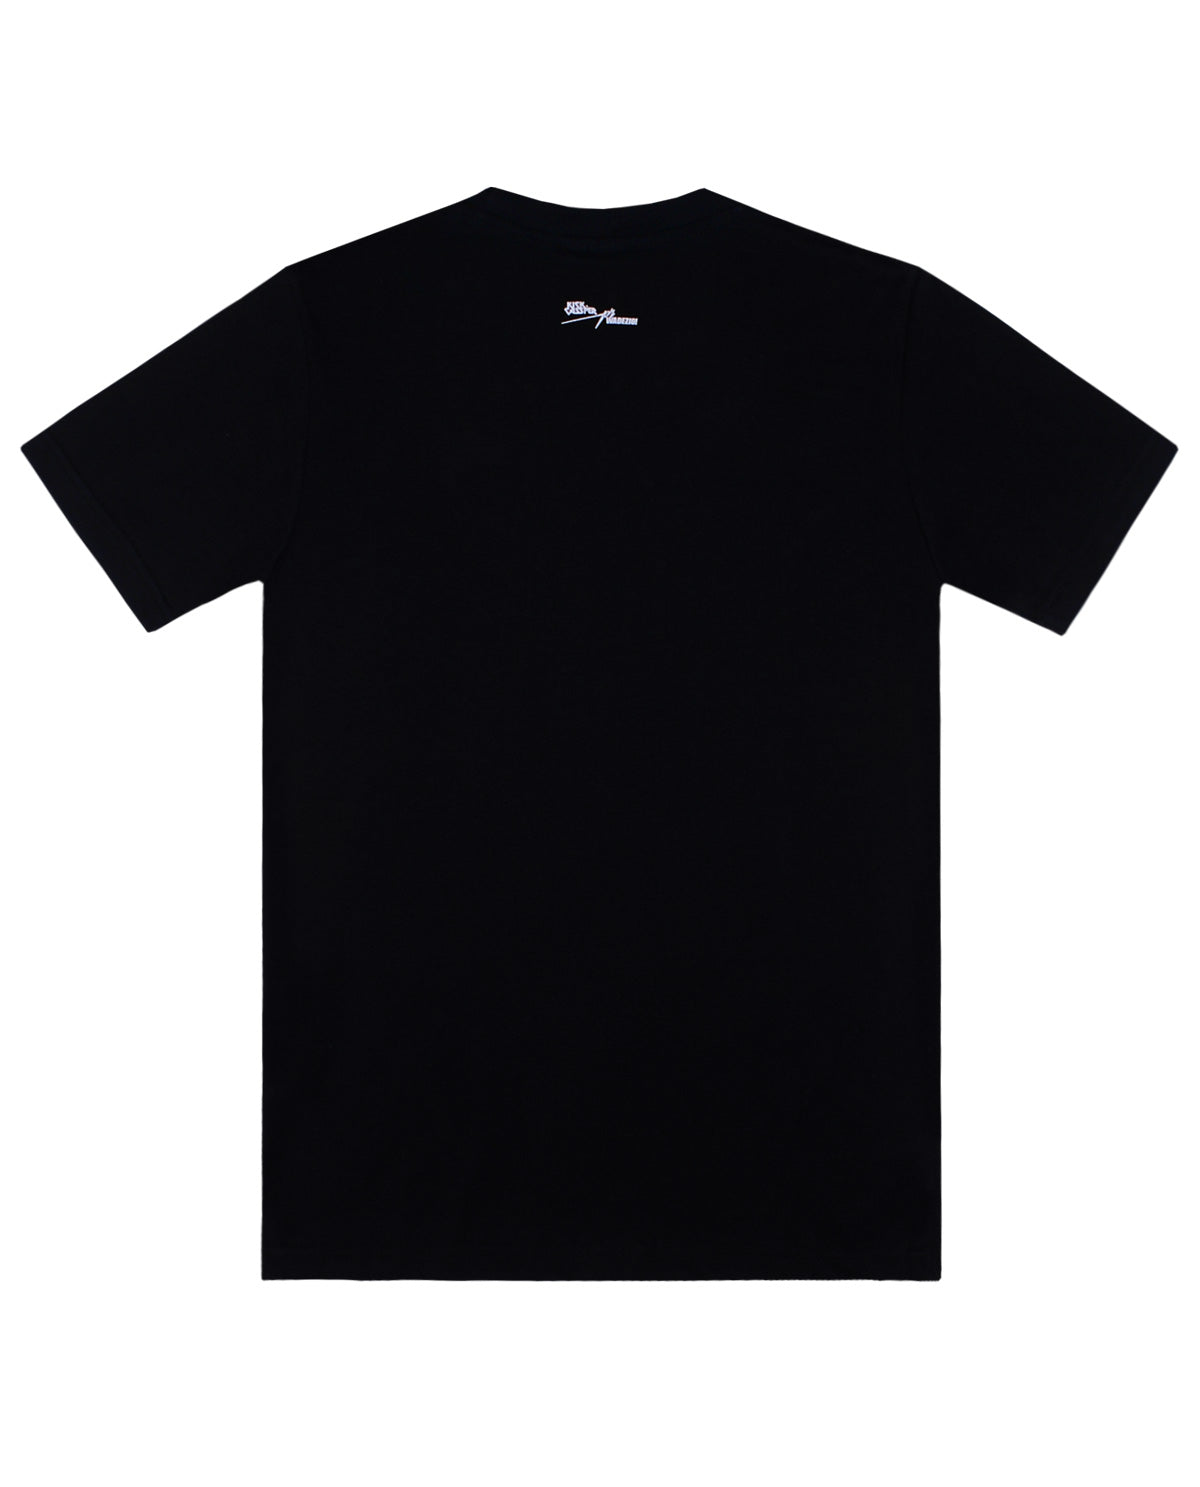 Wadezig! T-Shirt - Kick Cassper Series Black